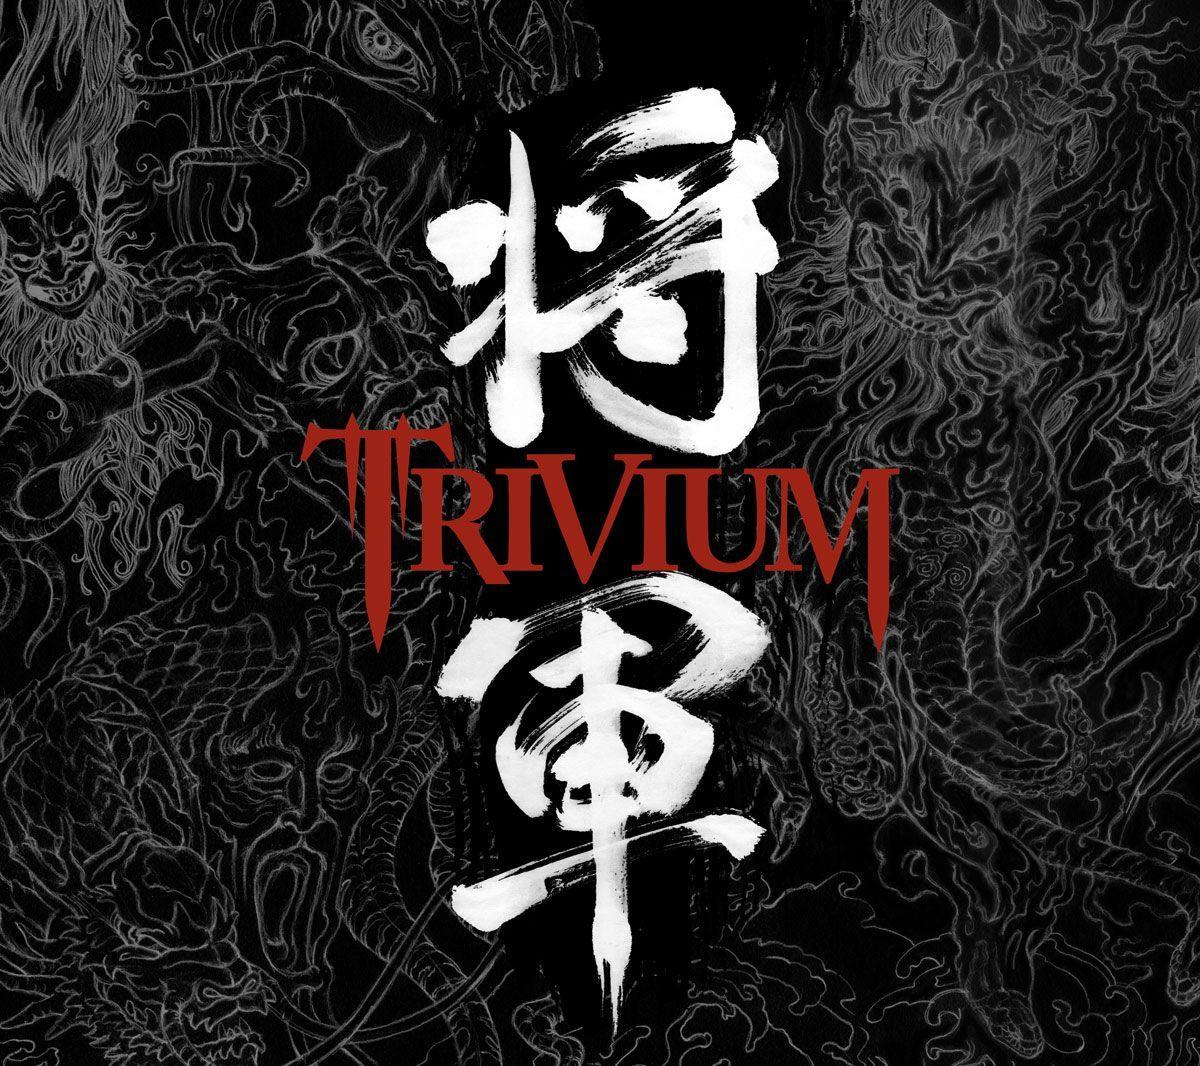 Asian typography and graphic design Trivium Shogun album cover. ADV